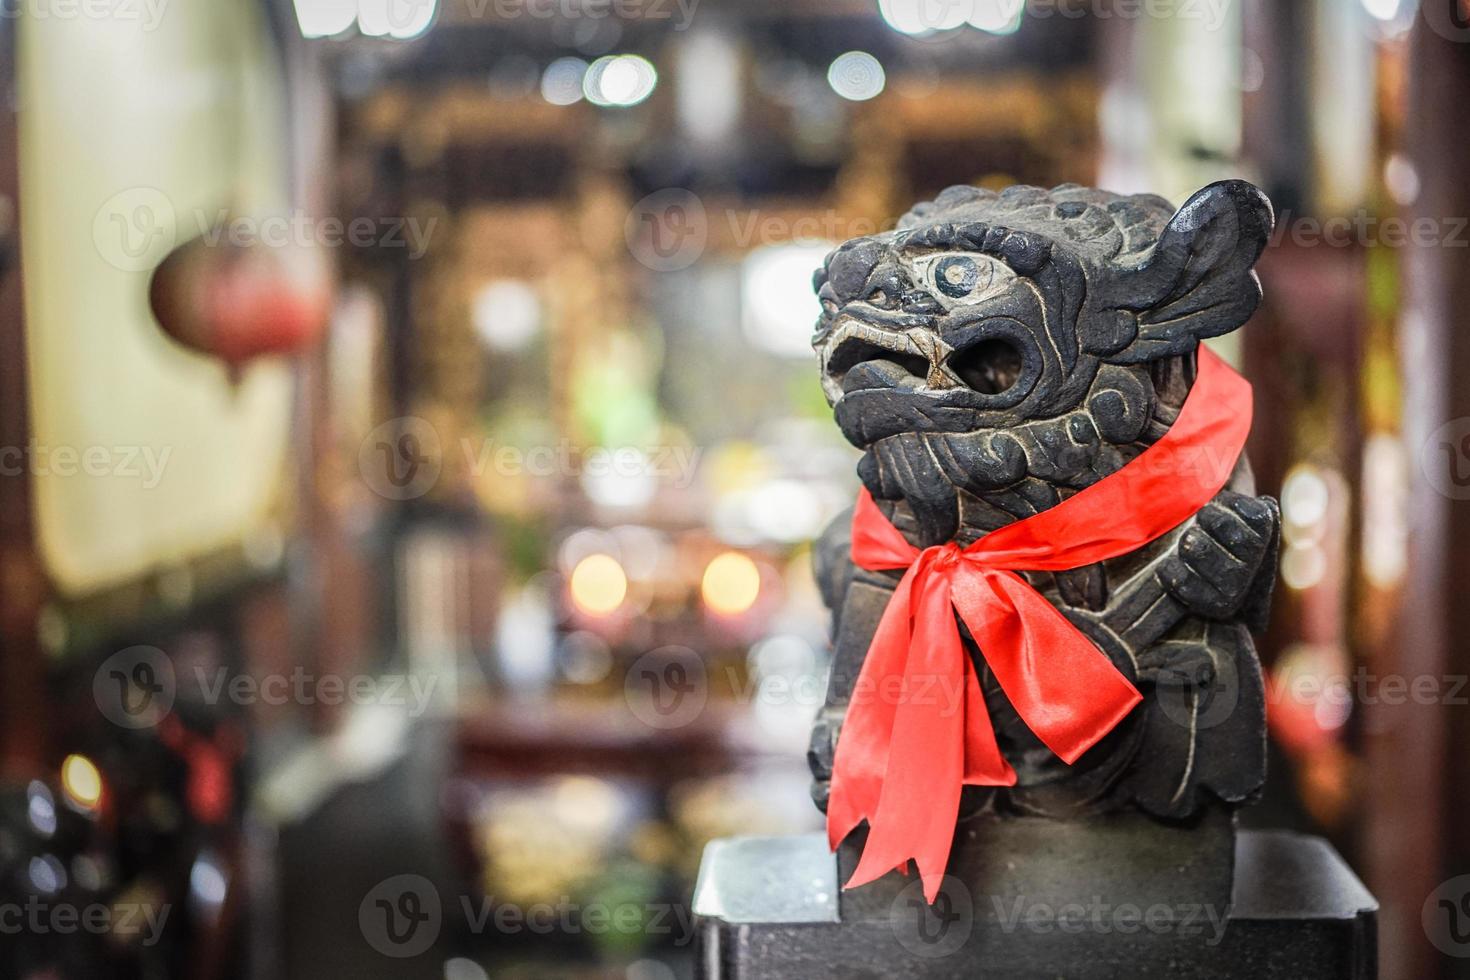 estátua de leão de pedra preta inteligente olha para o lado direito, lenço vermelho e fundo desfocado foto